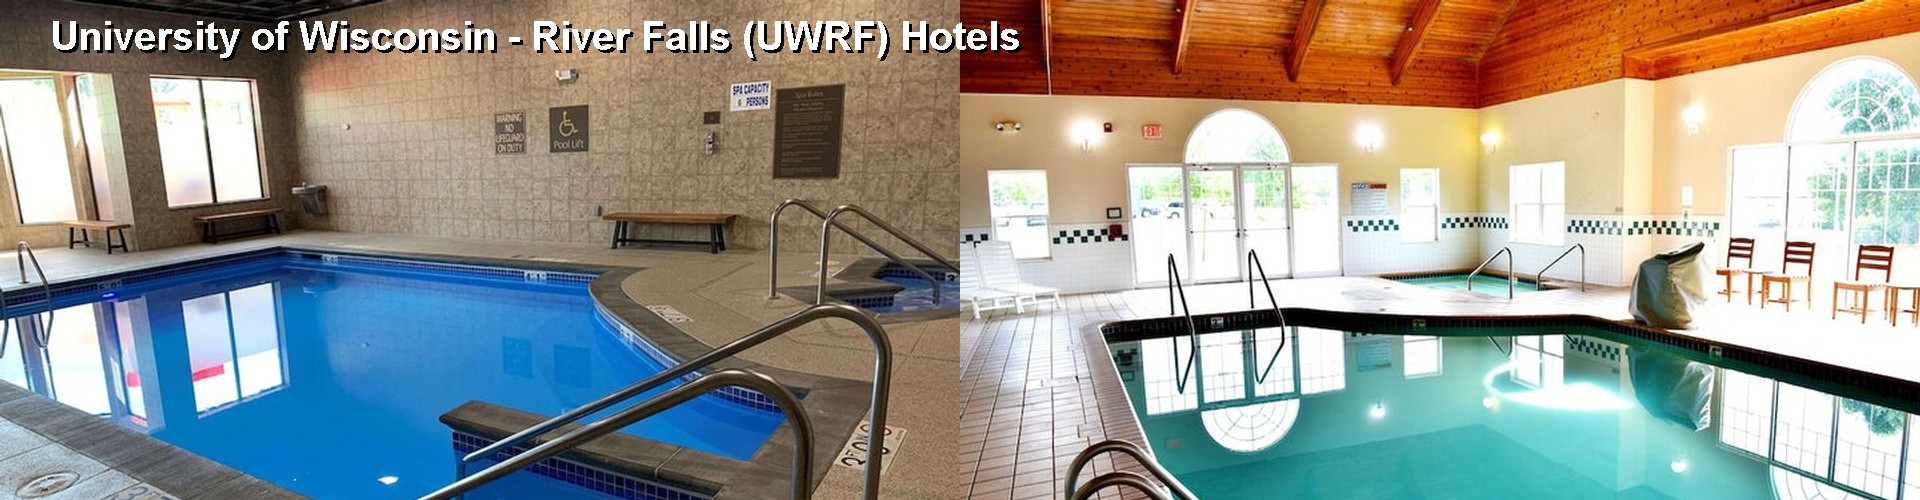 5 Best Hotels near University of Wisconsin - River Falls (UWRF)